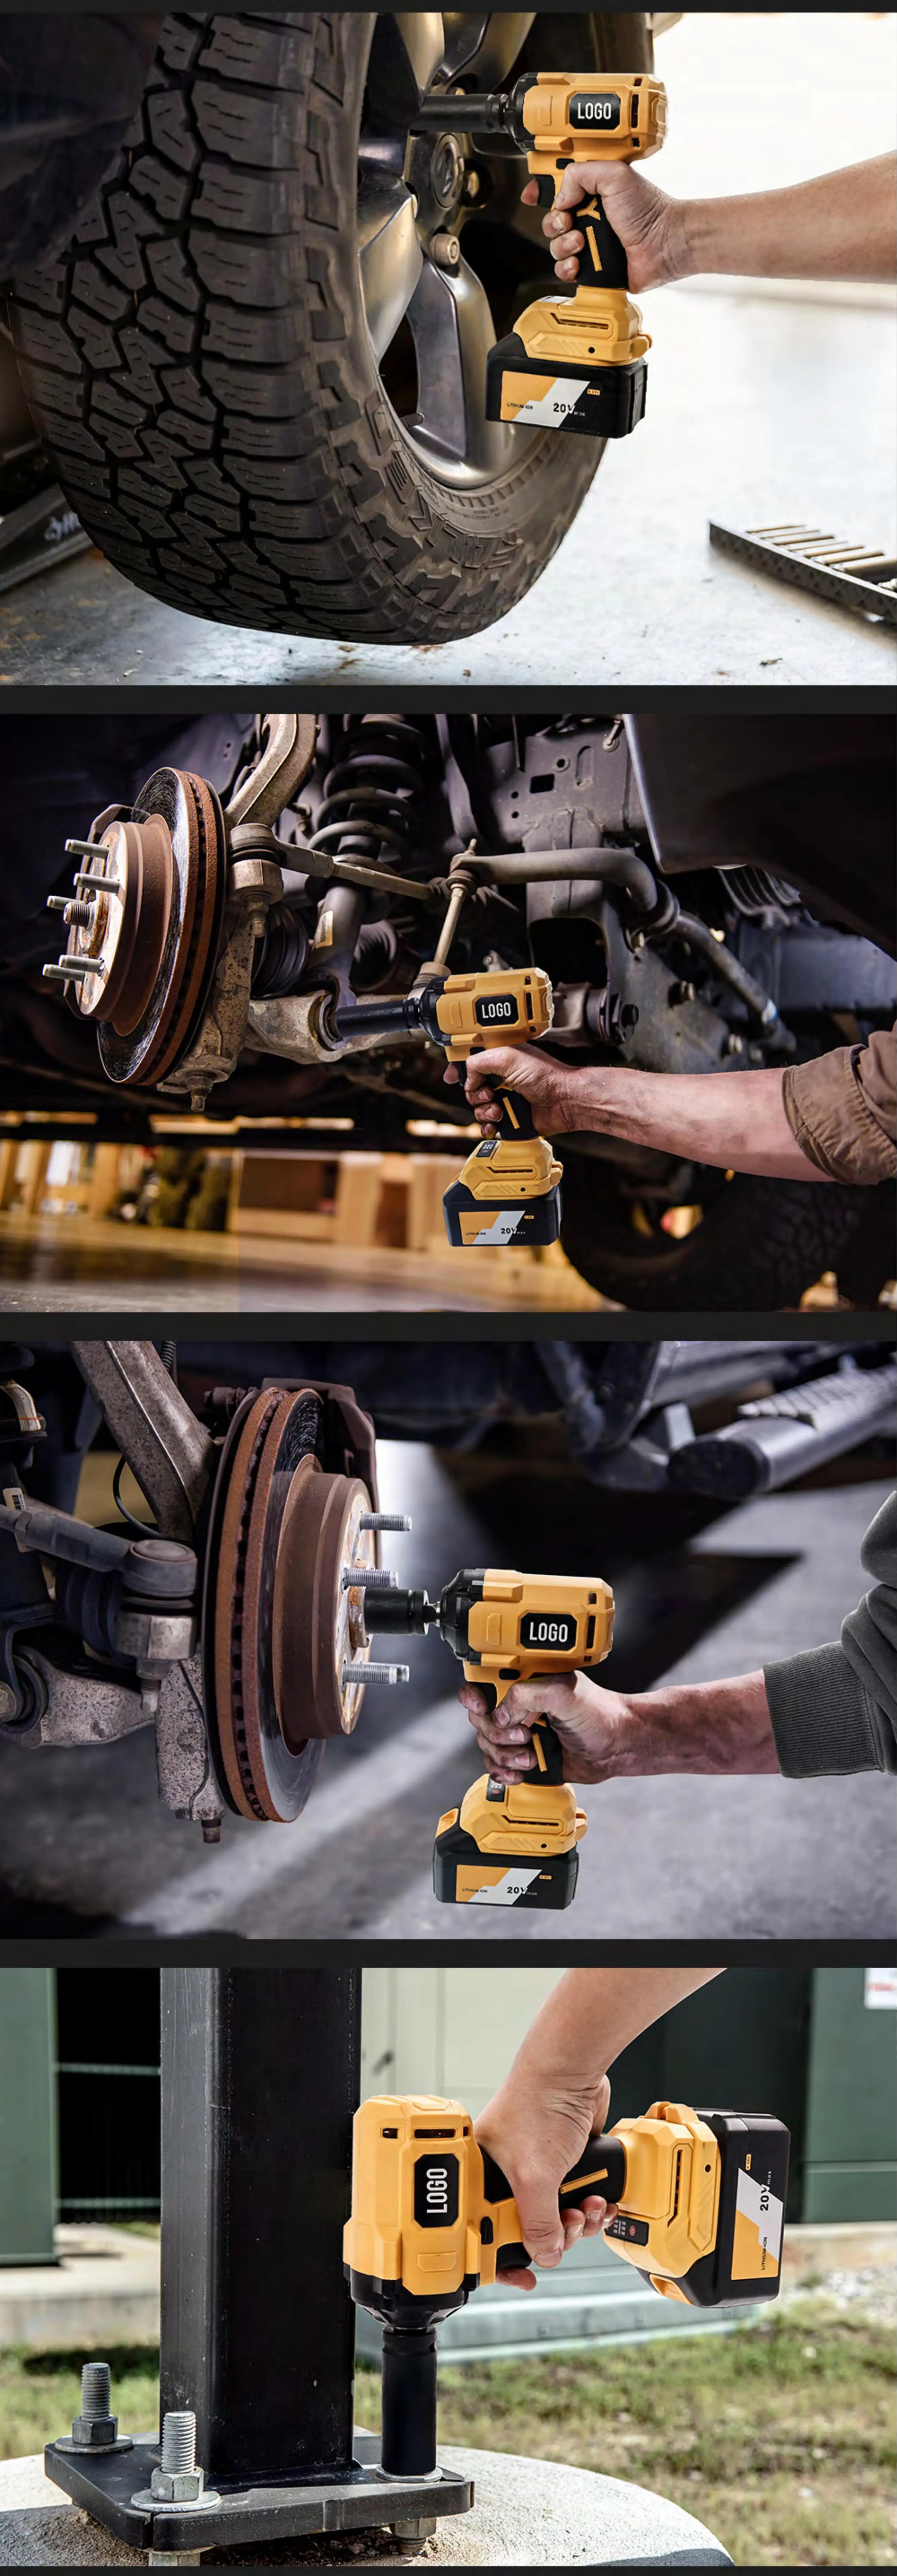 مفتاح براغي كهربائي متعدد الوظائف للسيارة بسعر المصنع HF2306 مجموعة أدوات شاملة لإصلاح السيارة